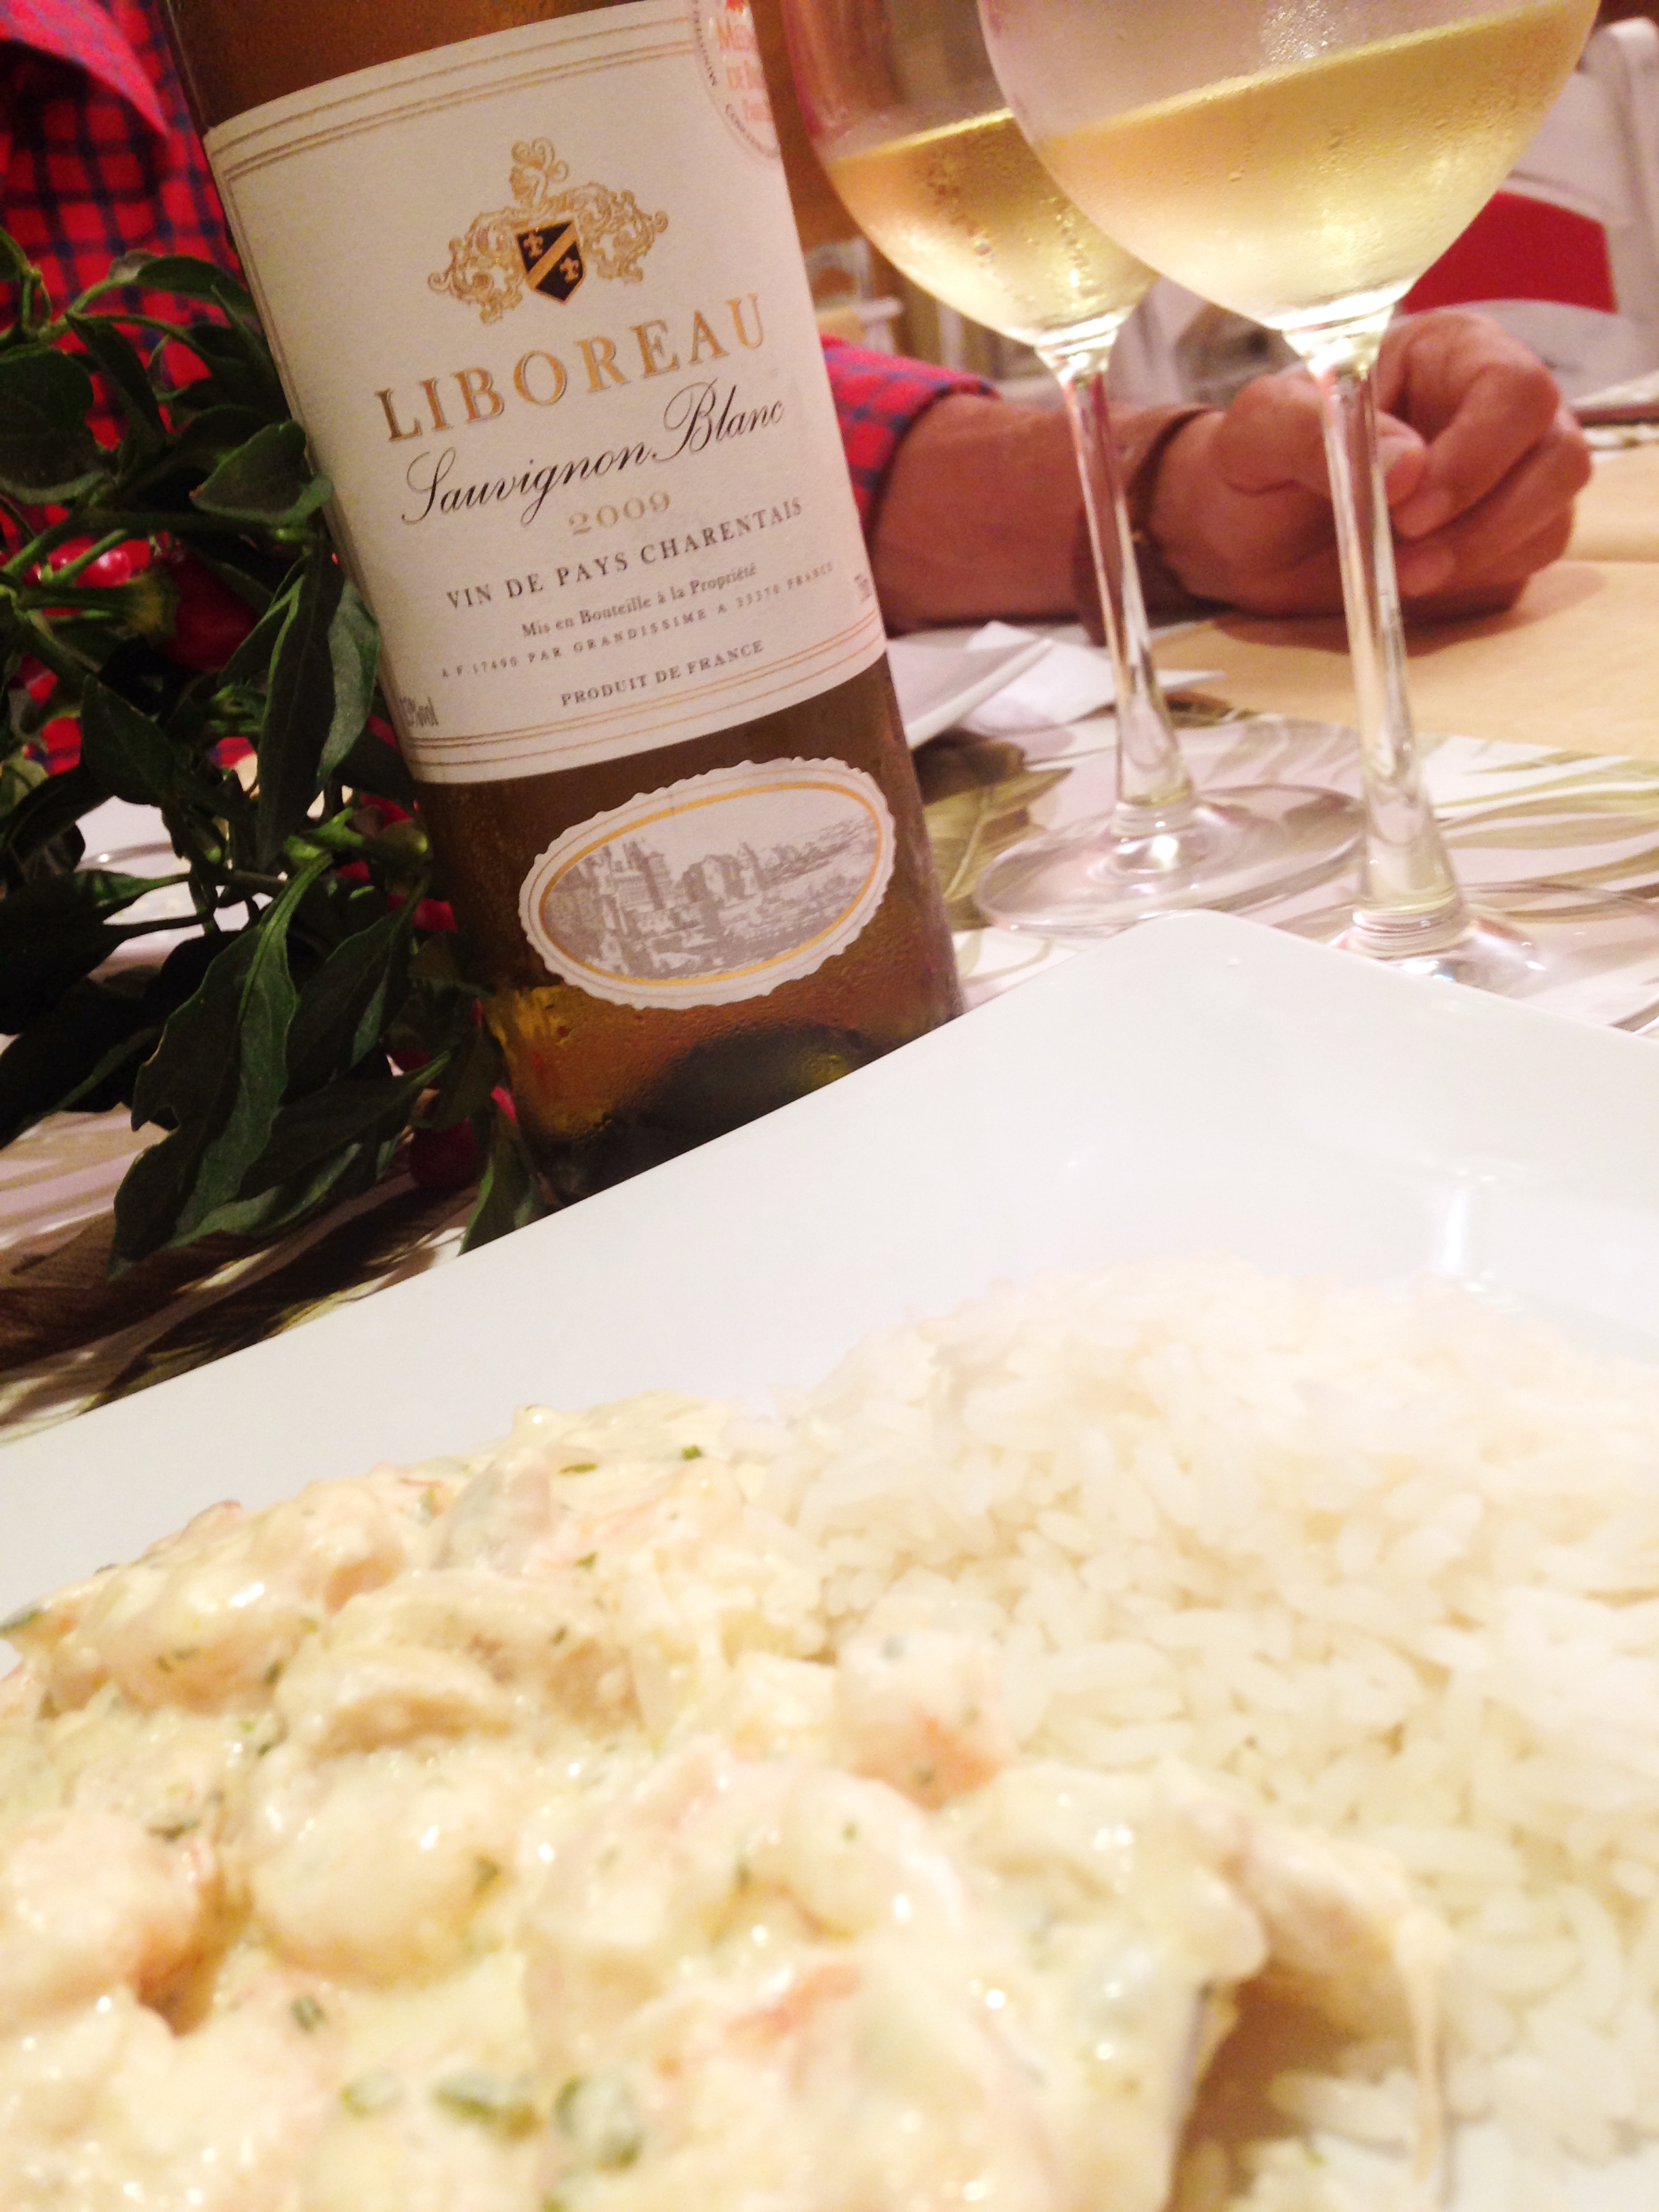 Liboreau Sauvignon Blanc na mesa!